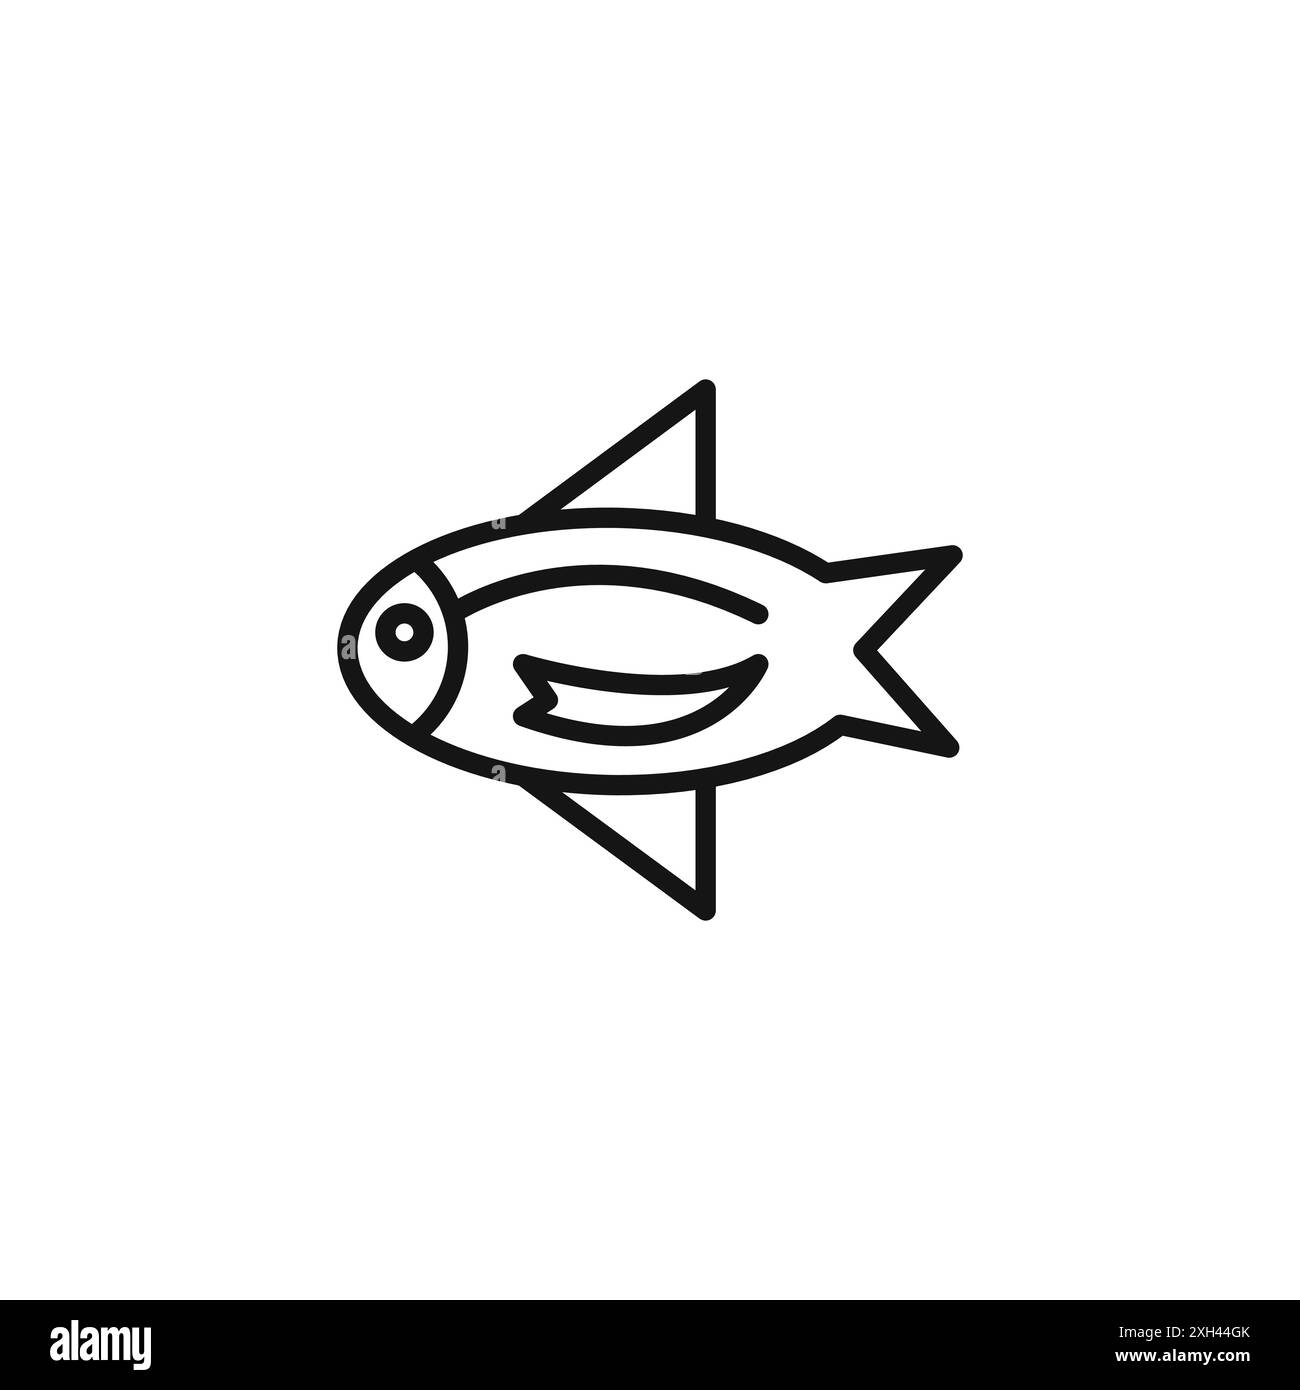 contour de vecteur de signe de logo d'icône de poisson de perche en couleur noire et blanche Illustration de Vecteur